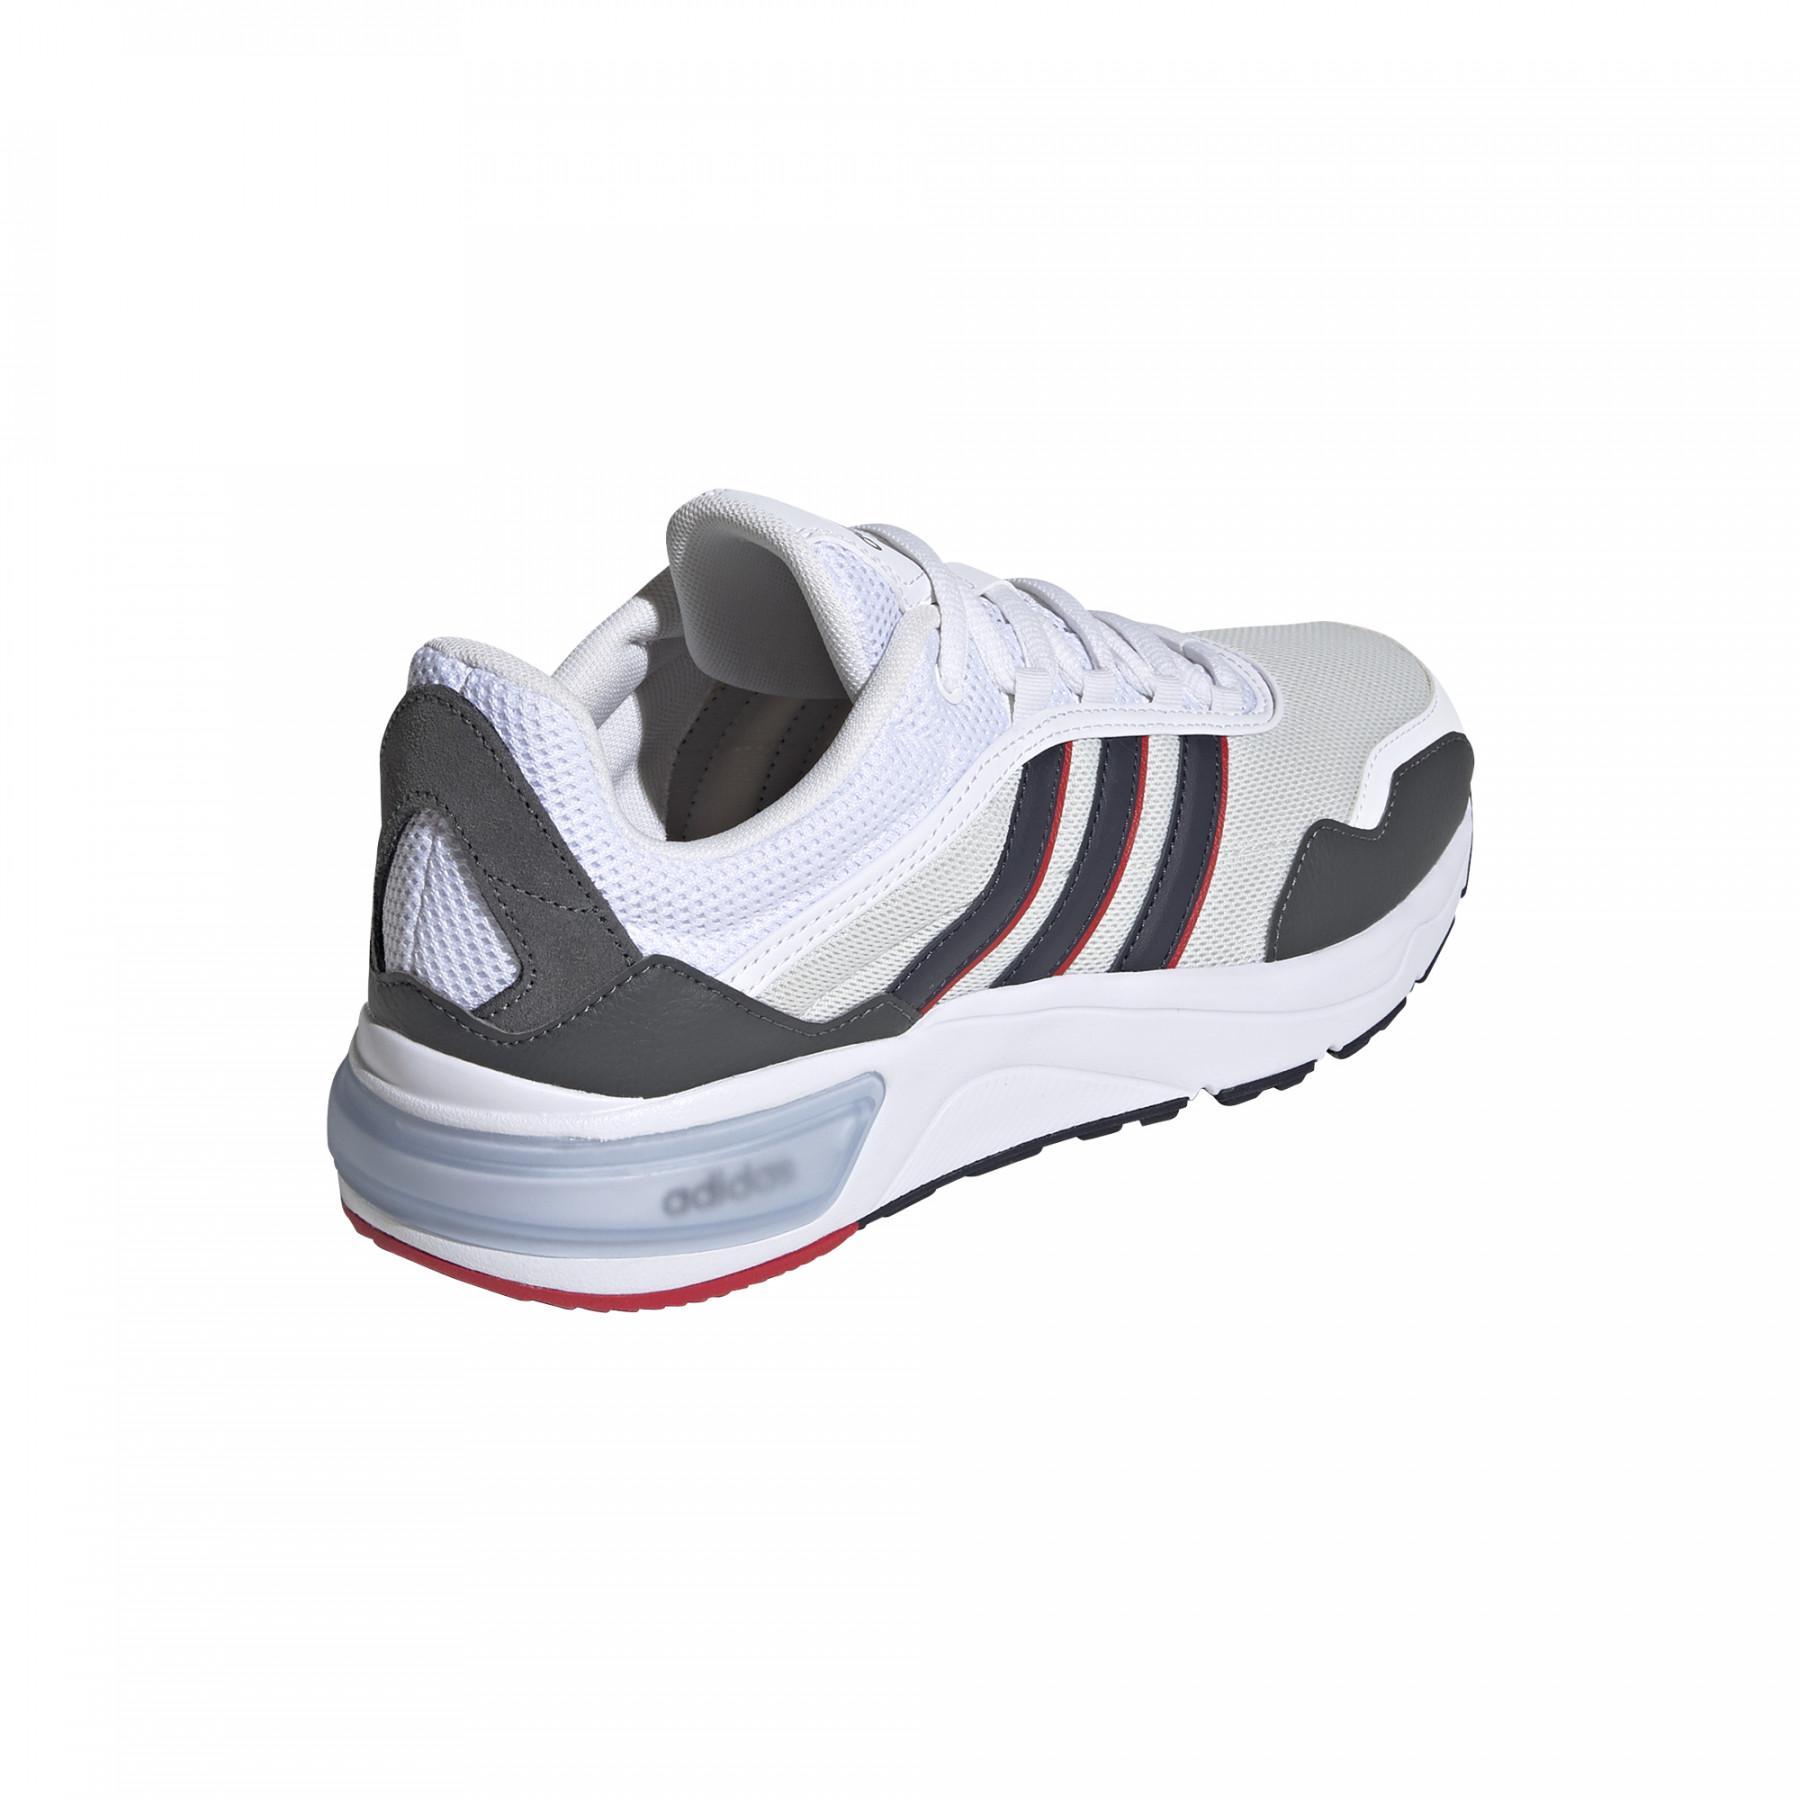 Chaussures de running adidas 90s Runner